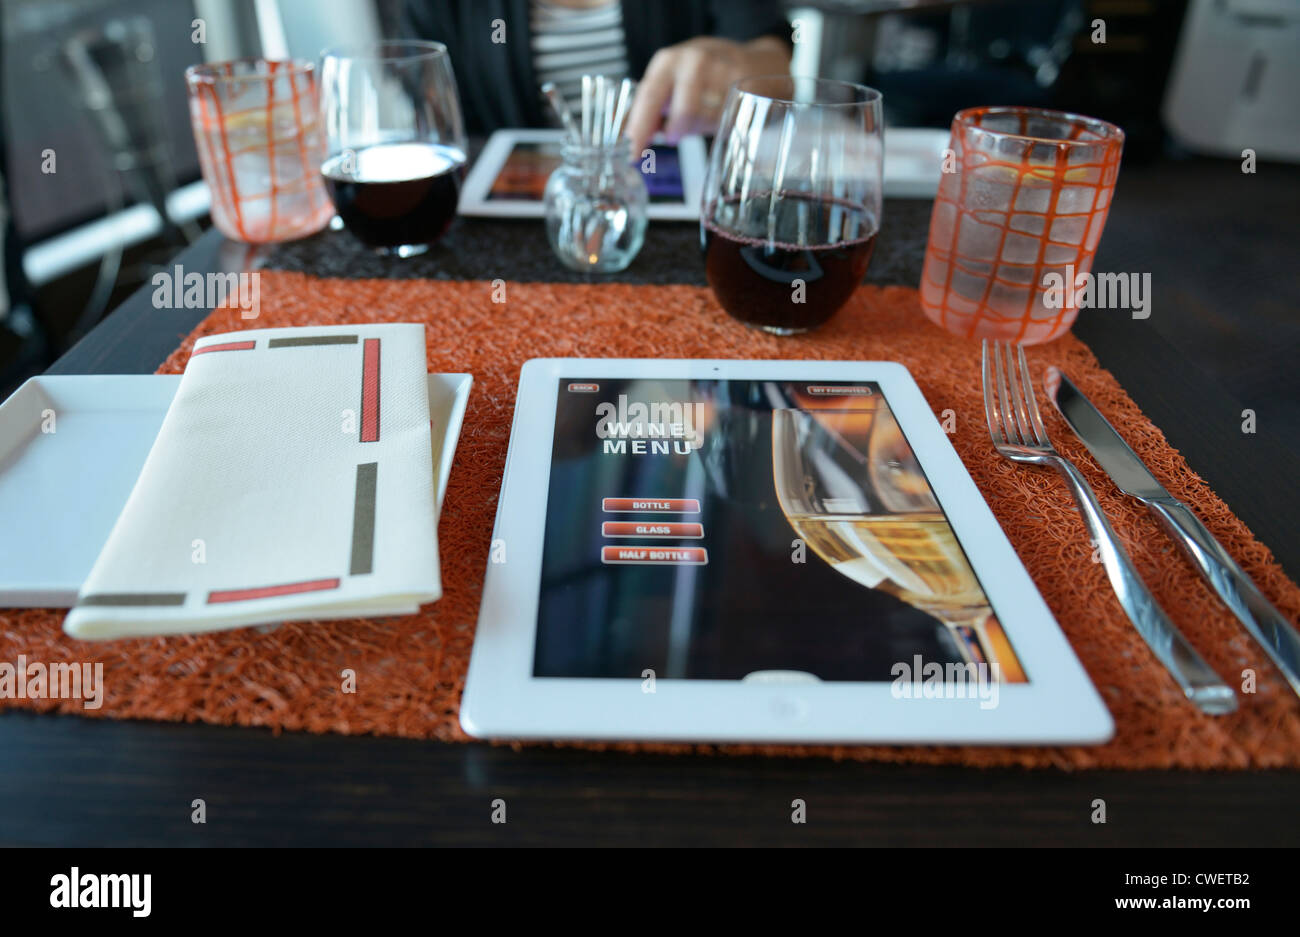 Il menù di un ristorante su ipad. La pagina selezionata è la pagina iniziale per il menu dei vini. Foto Stock